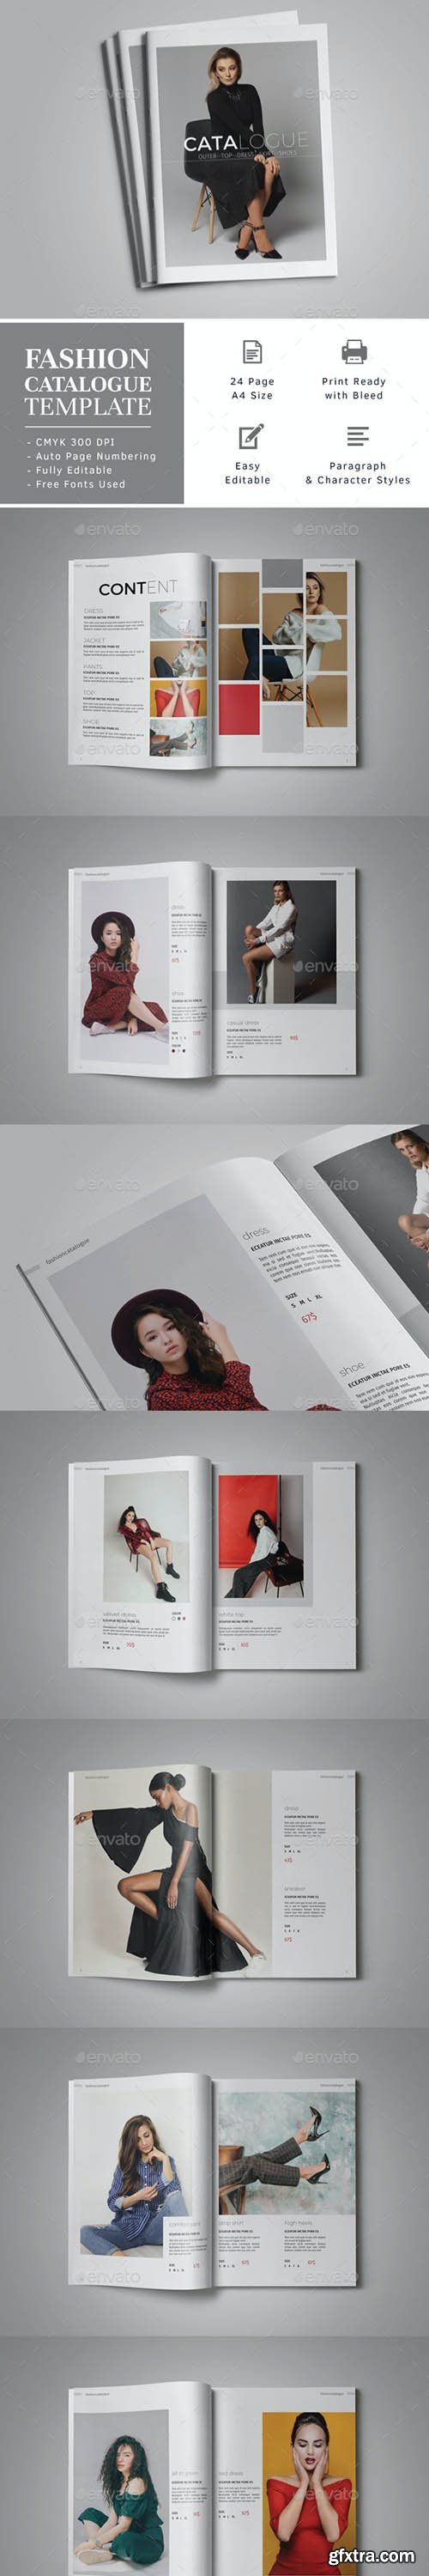 GraphicRiver - Fashion Catalogue Template 24401667